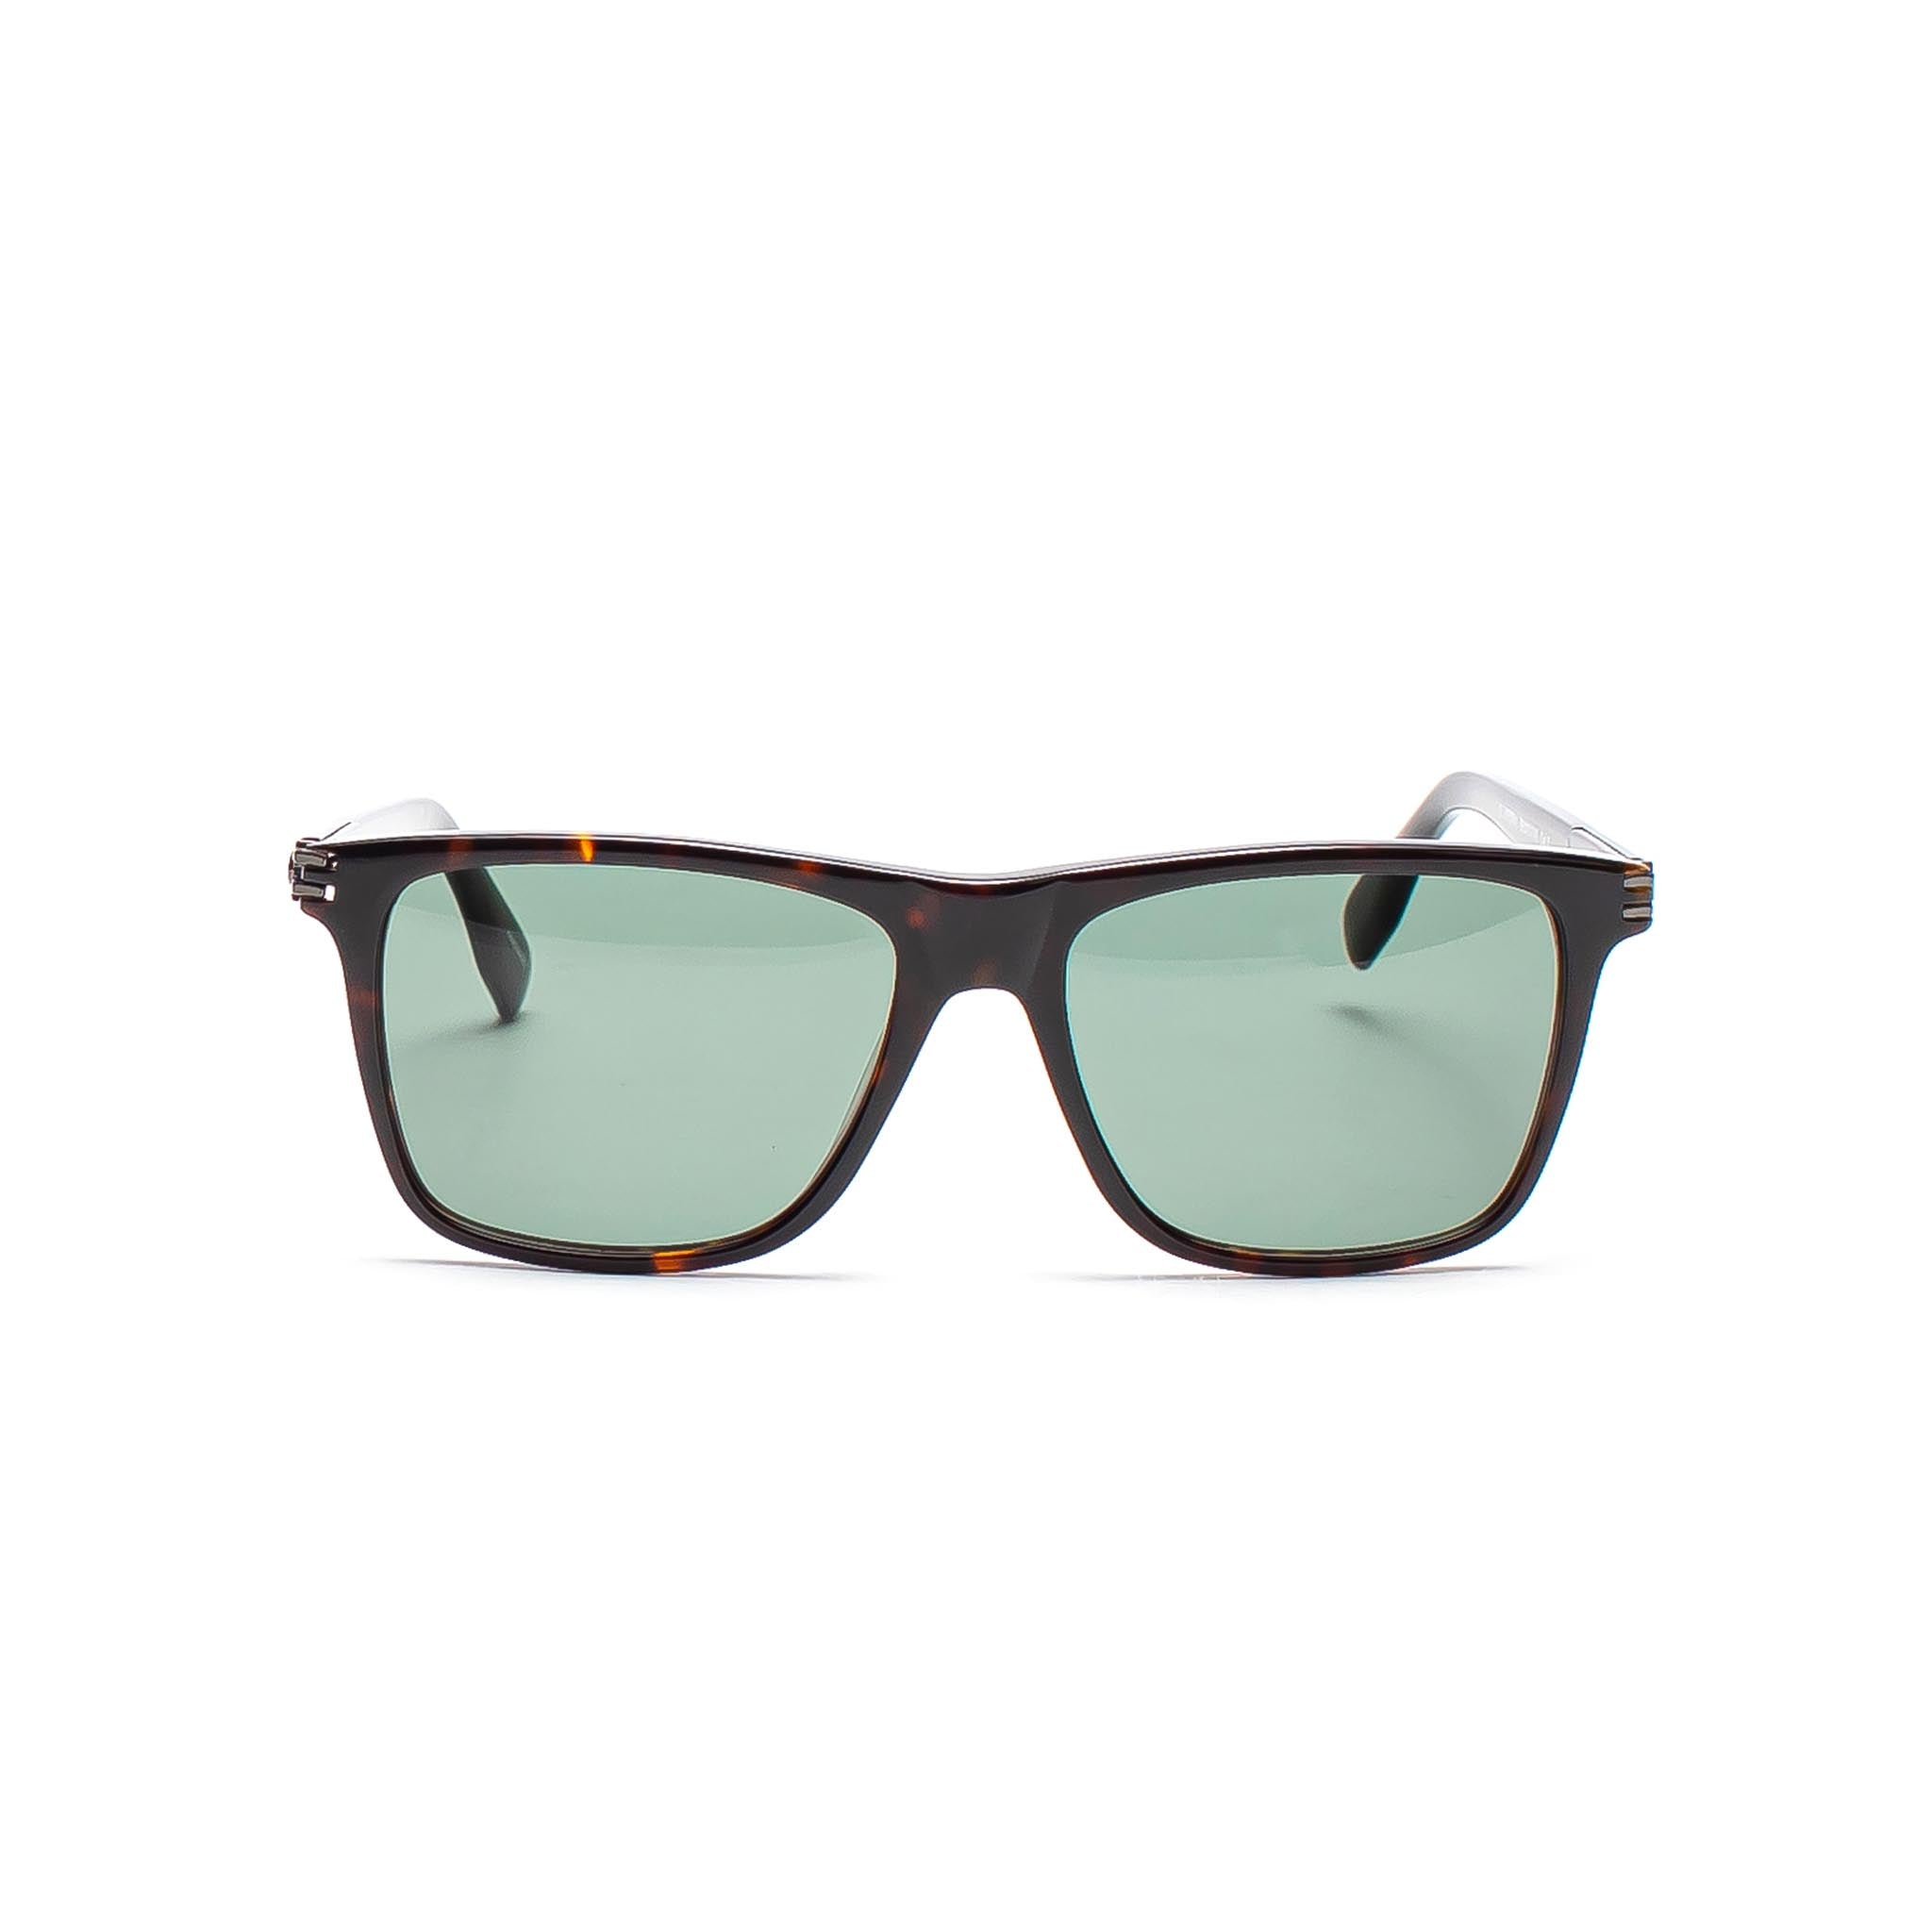 HOMME+ HP008 Sunglasses Tortoise